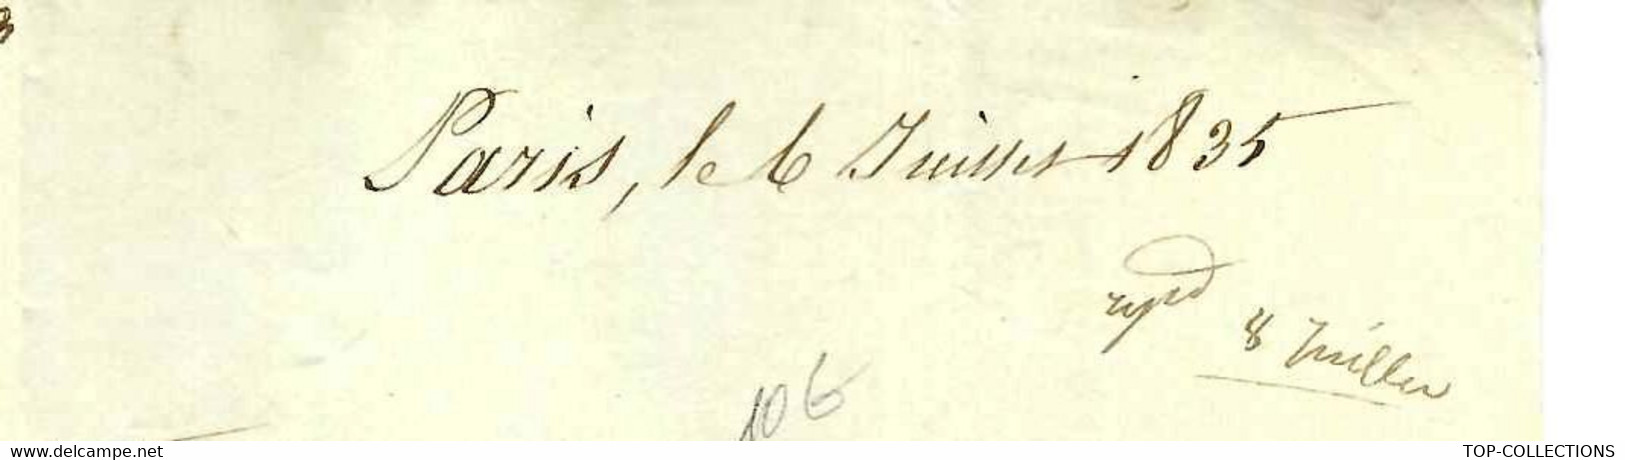 1835 De Paris Lettre Signée Marque Postale Bureau De La Maison Du Roi  COMMANDE DE TUYAUX DESSIN SUR LA LETTRE - Historical Documents